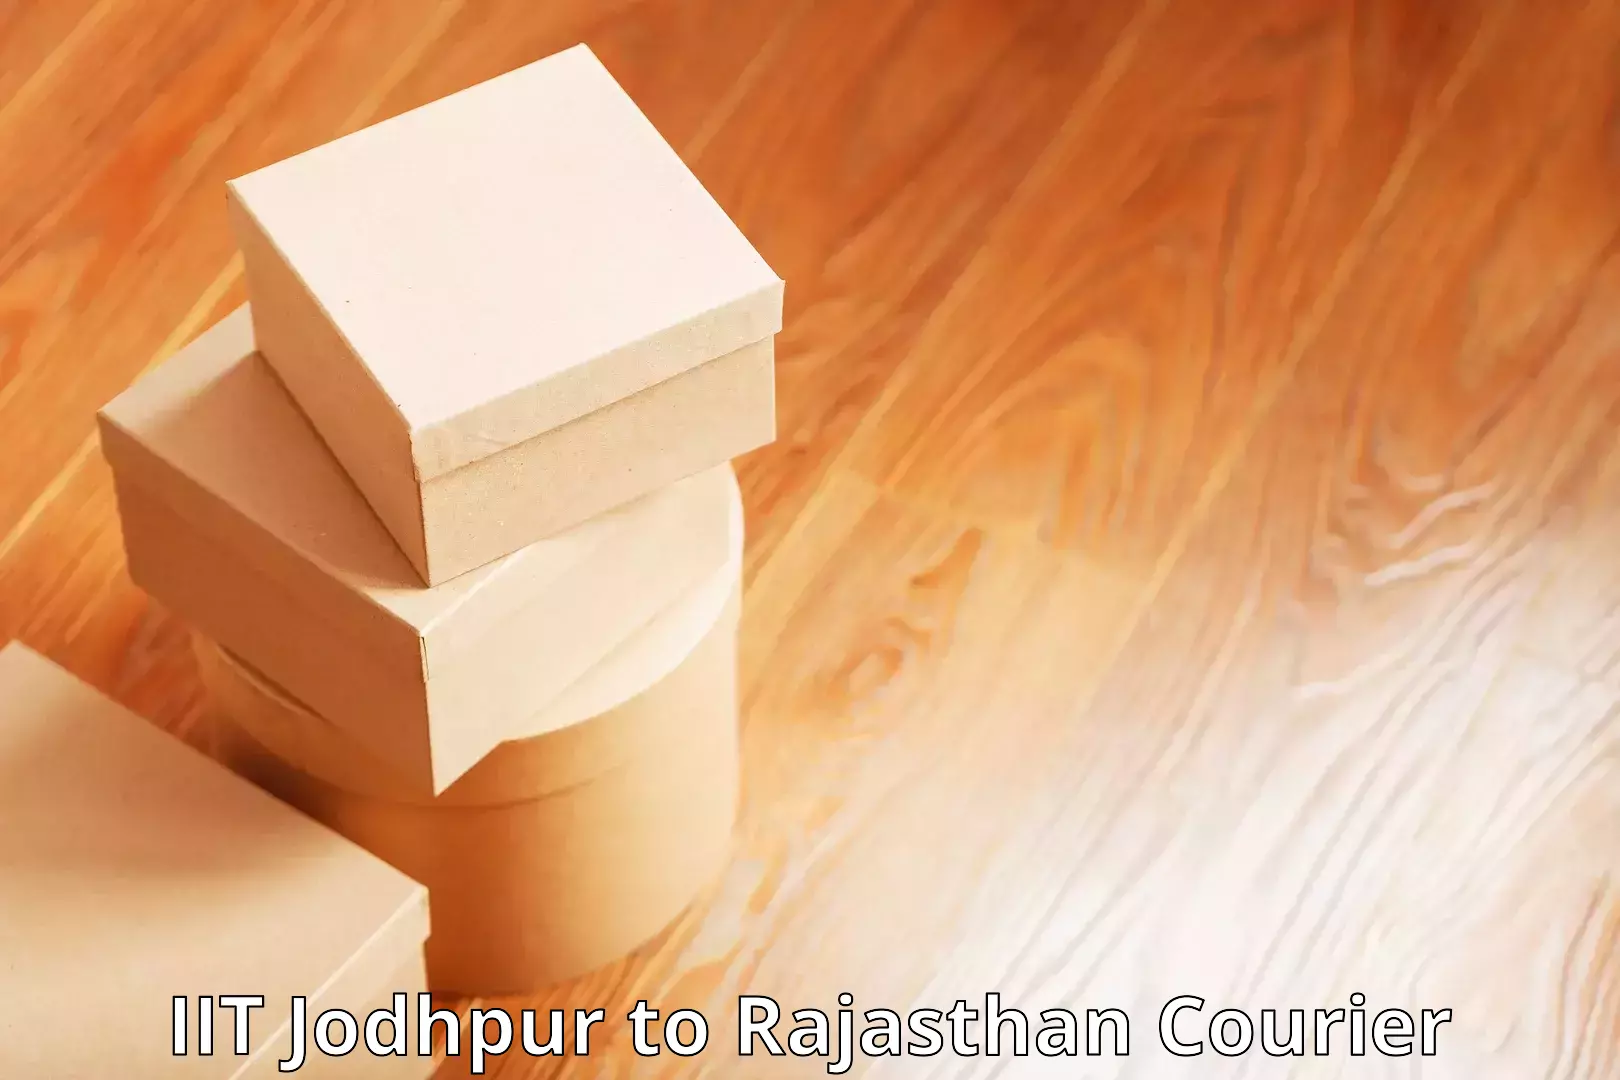 Online package tracking IIT Jodhpur to Kalwar